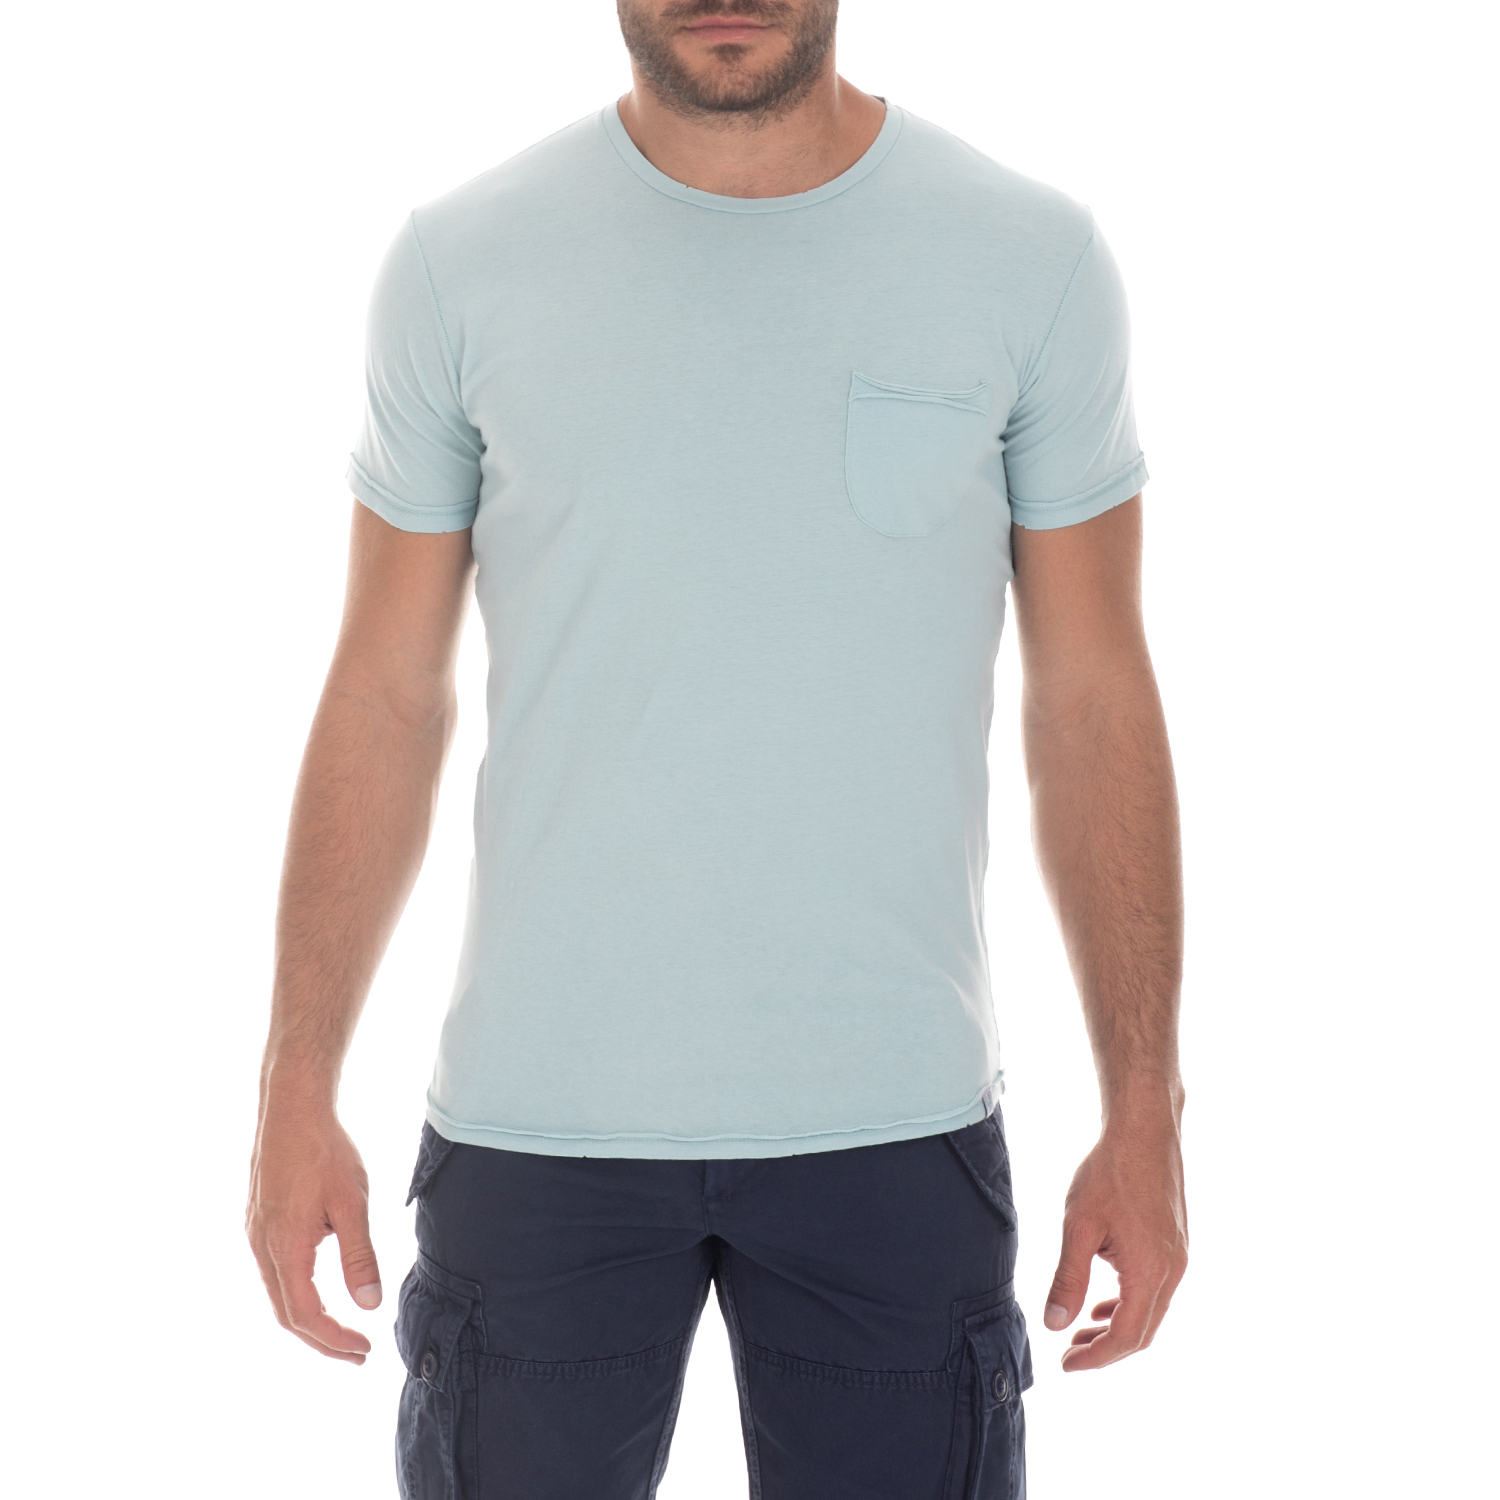 Ανδρικά/Ρούχα/Μπλούζες/Κοντομάνικες GREENWOOD - Ανδρική μπλούζα GREENWOOD γαλάζια